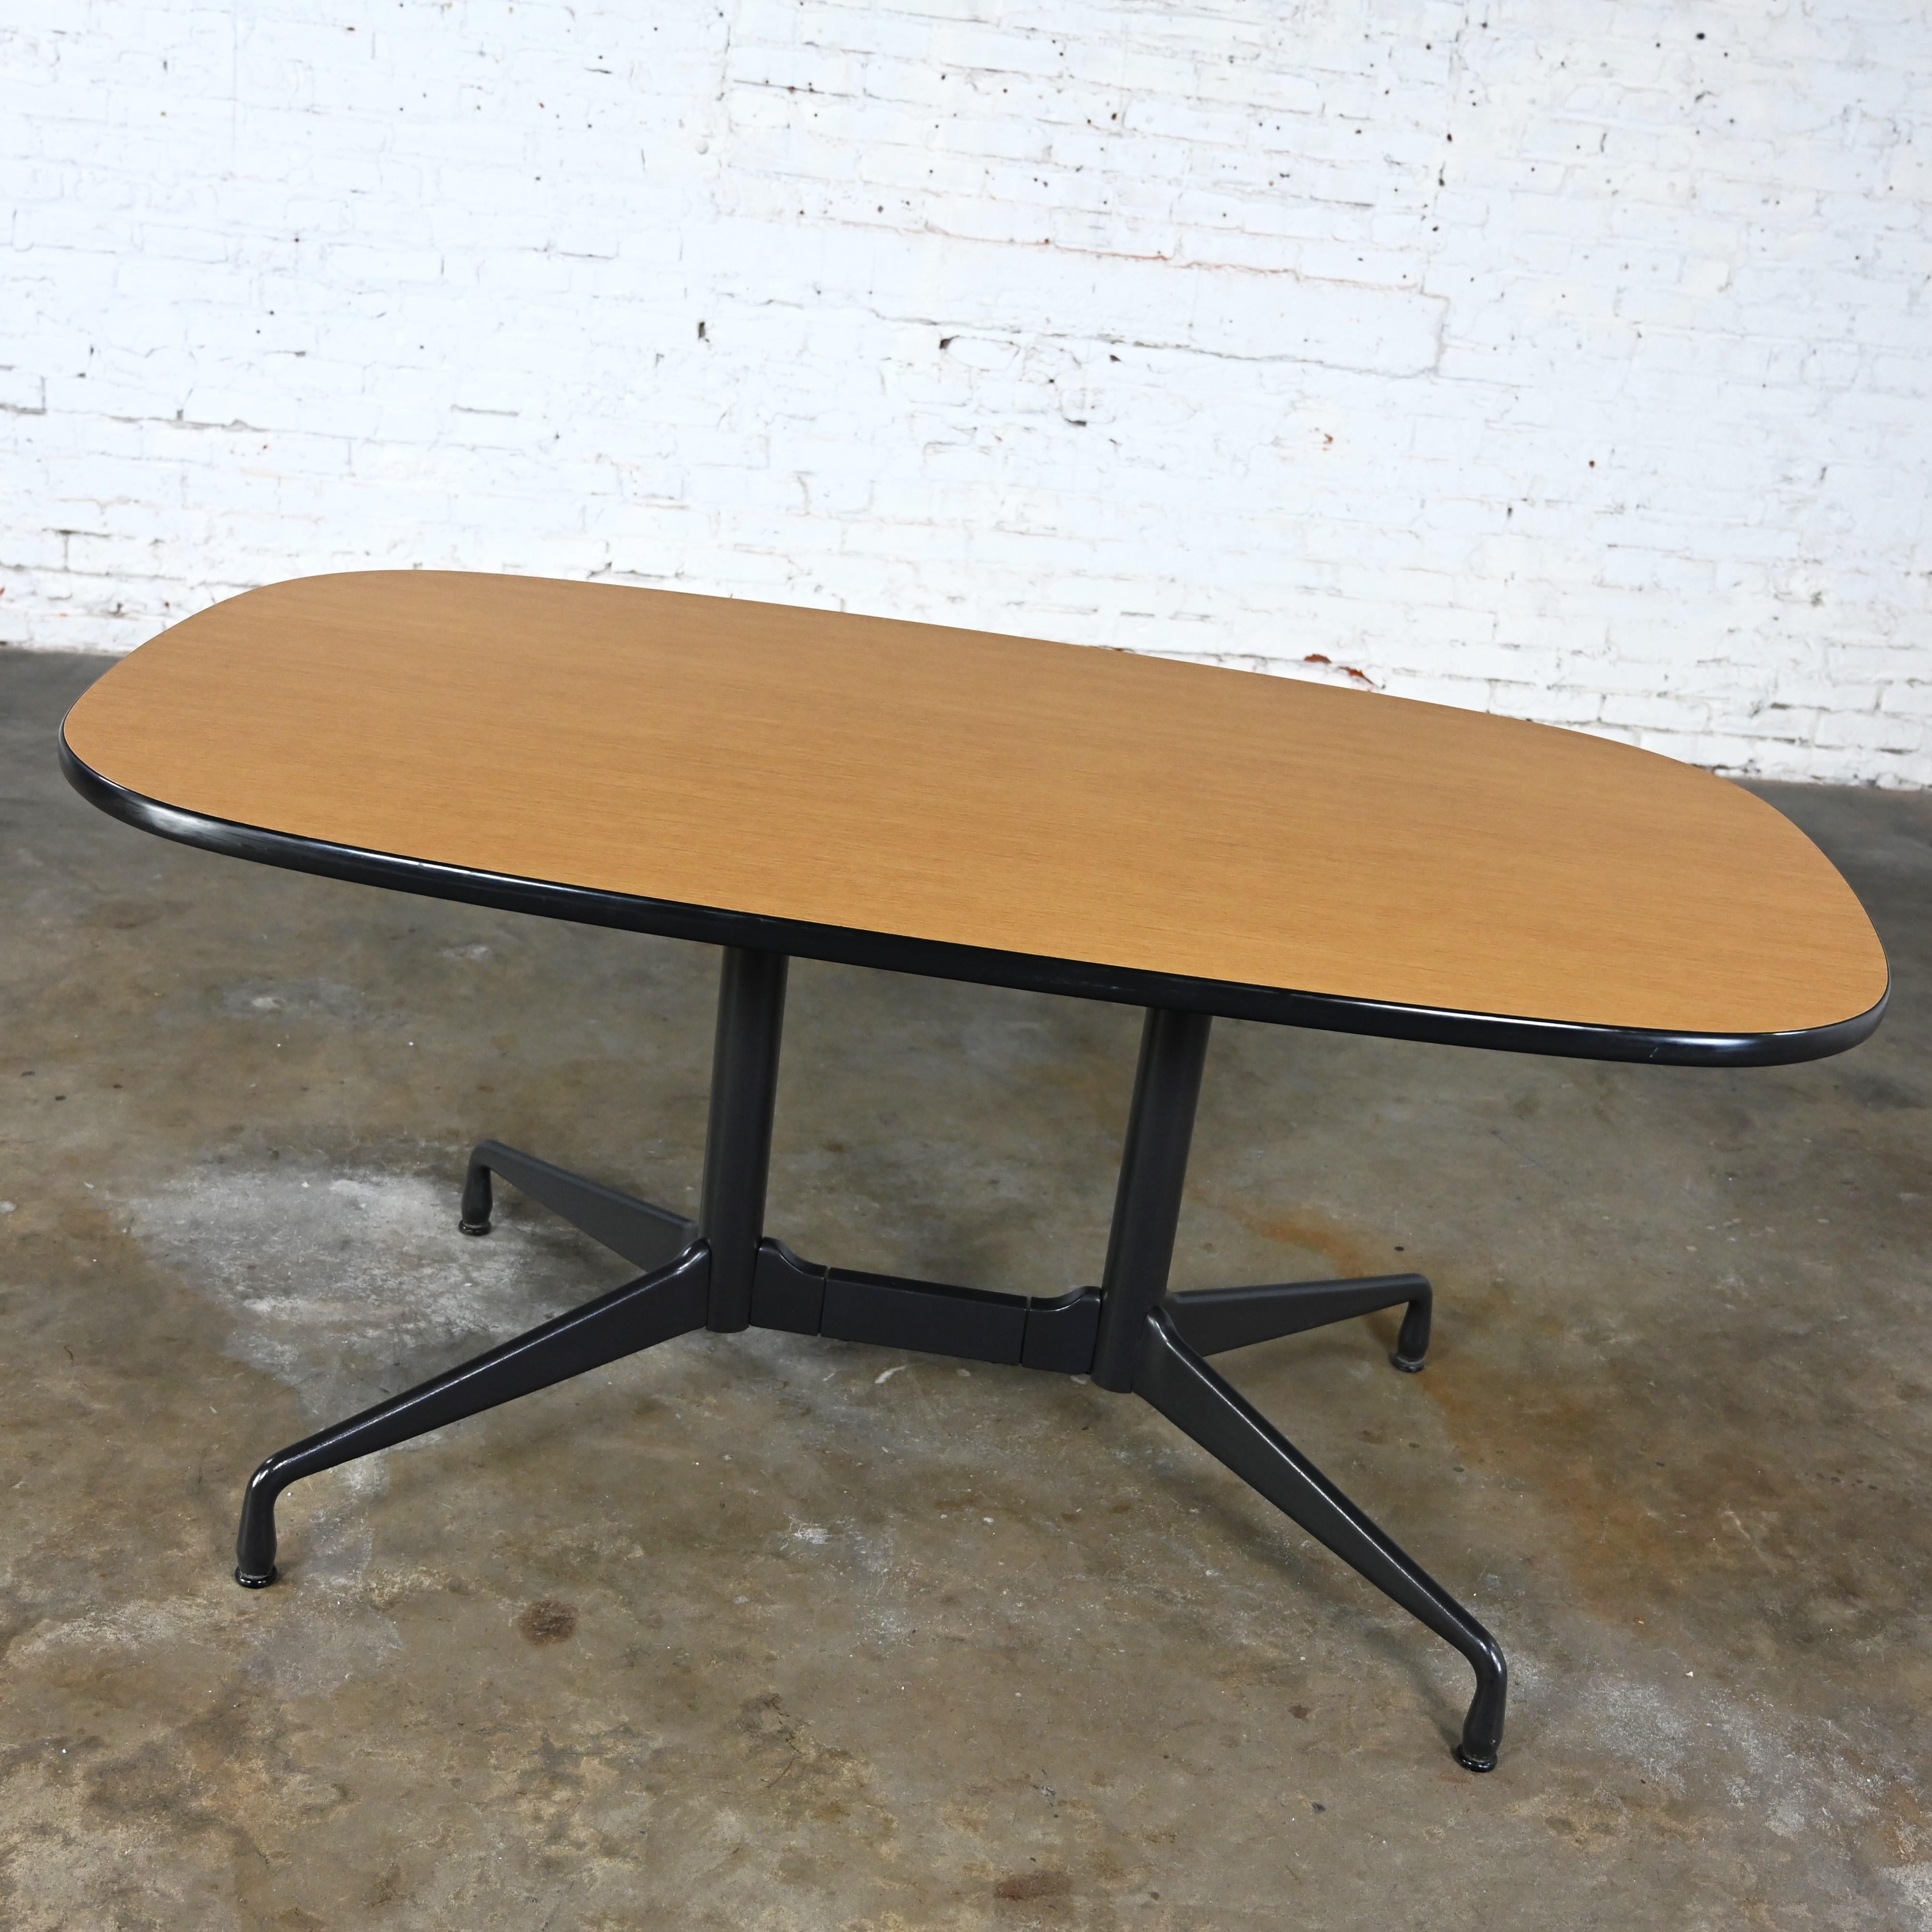 Incroyable table de conférence ou de salle à manger vintage MCM (Mid-Century Modern) Eames pour Herman Miller racetrack ovale avec une base universelle segmentée noire et un plateau en stratifié blond clair avec bordures en vinyle noir. Byit, en